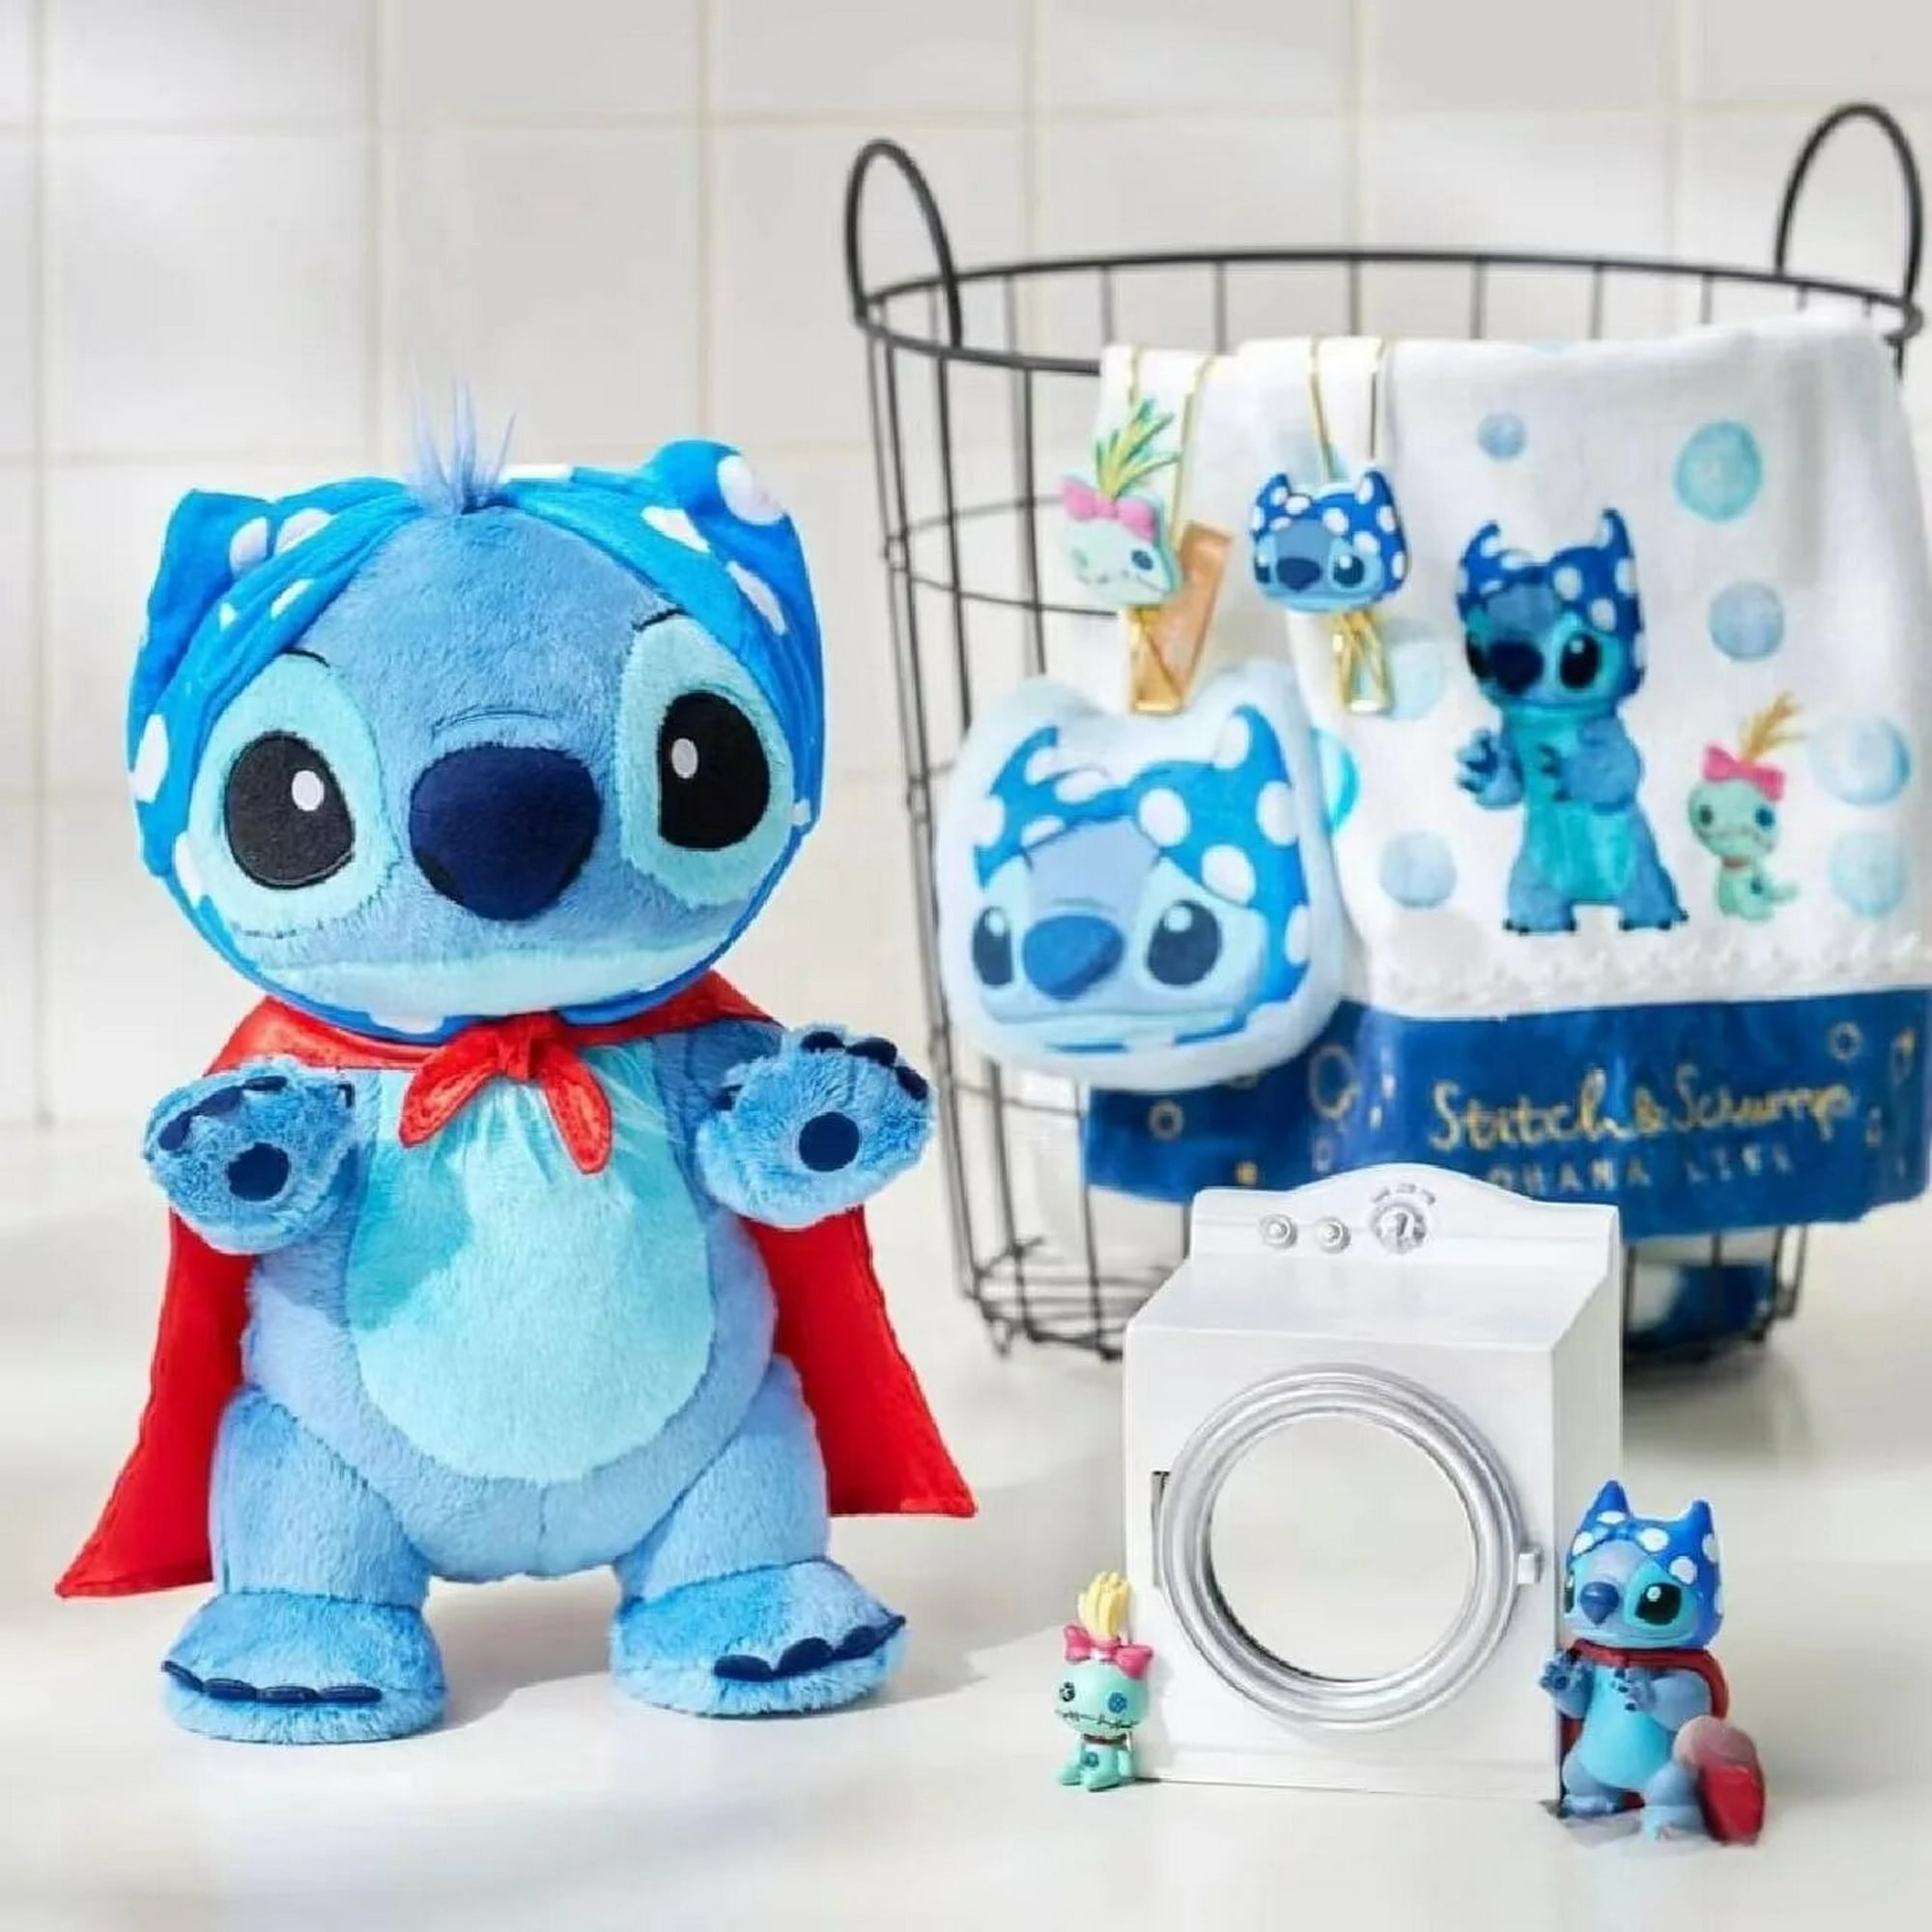 Disney-muñeco de peluche de Lilo y Stitch para niña, juguete de